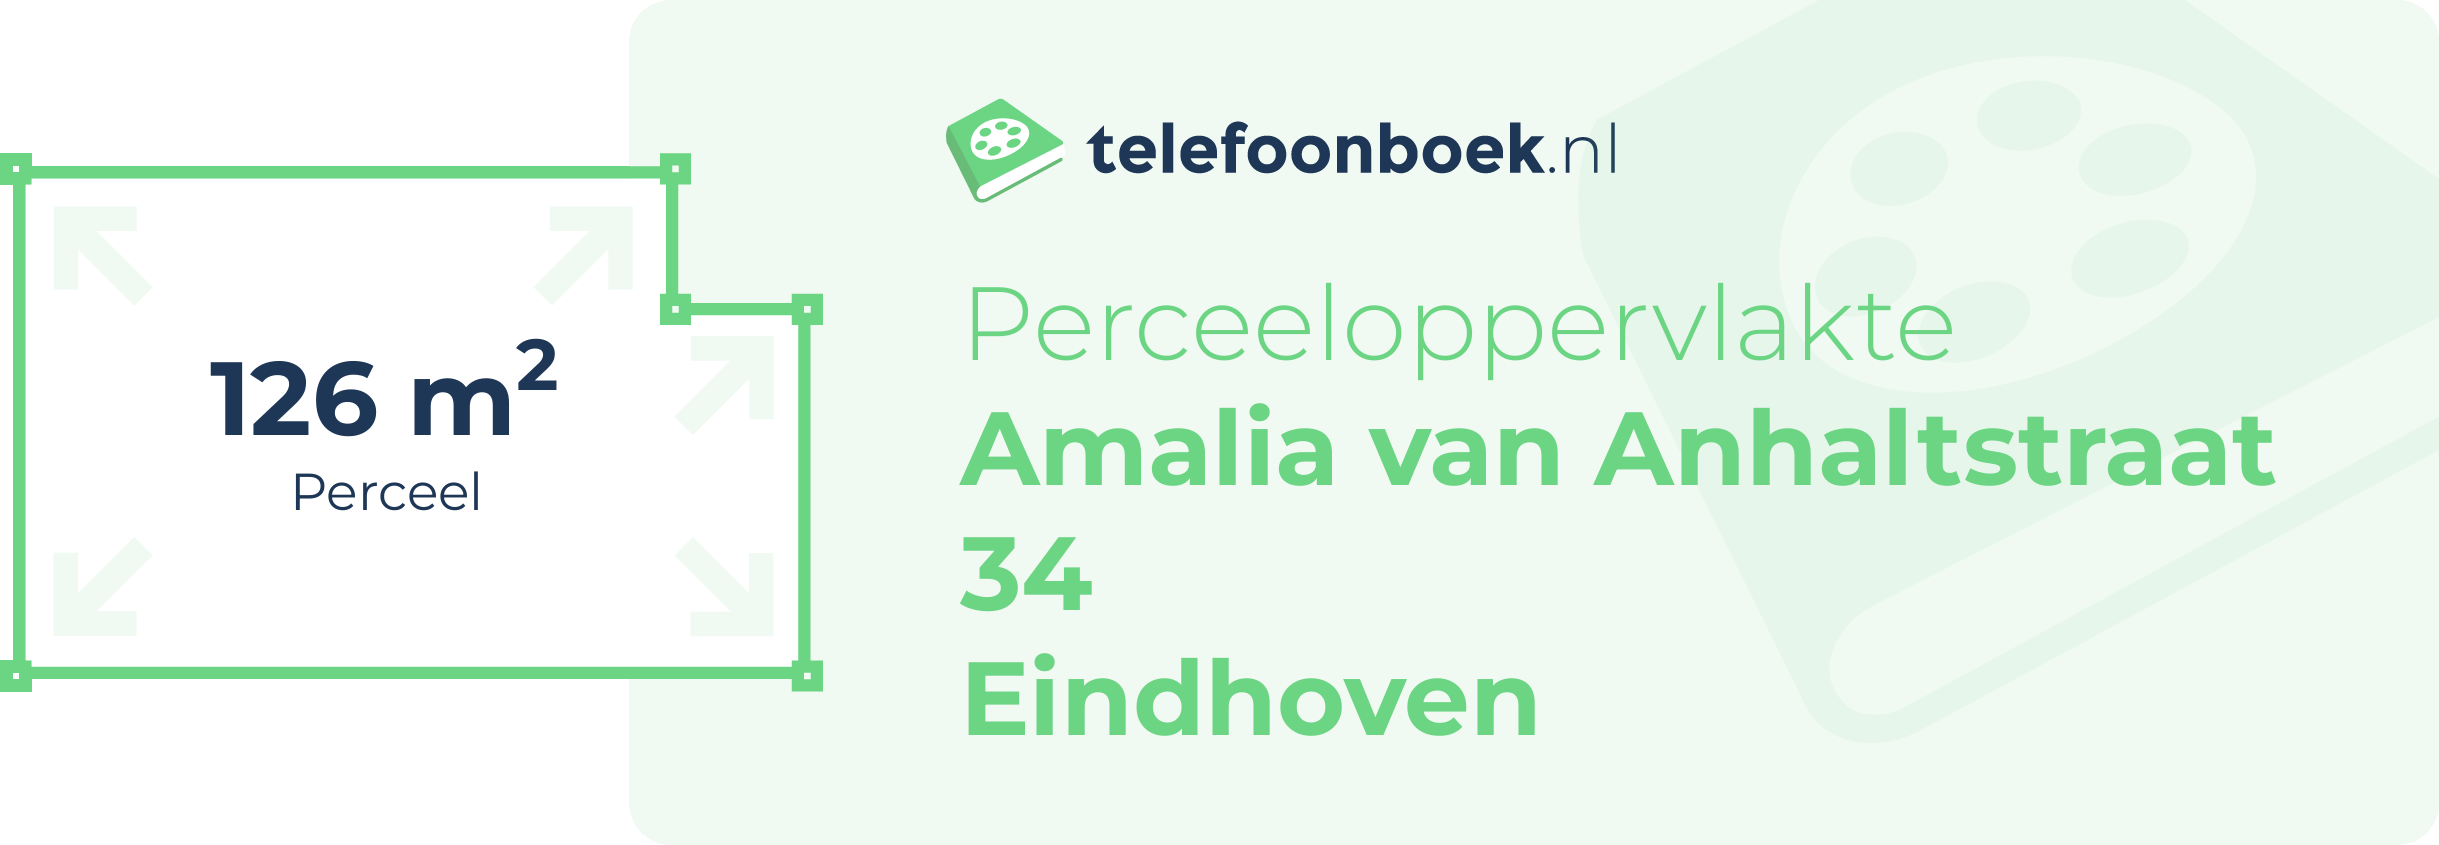 Perceeloppervlakte Amalia Van Anhaltstraat 34 Eindhoven